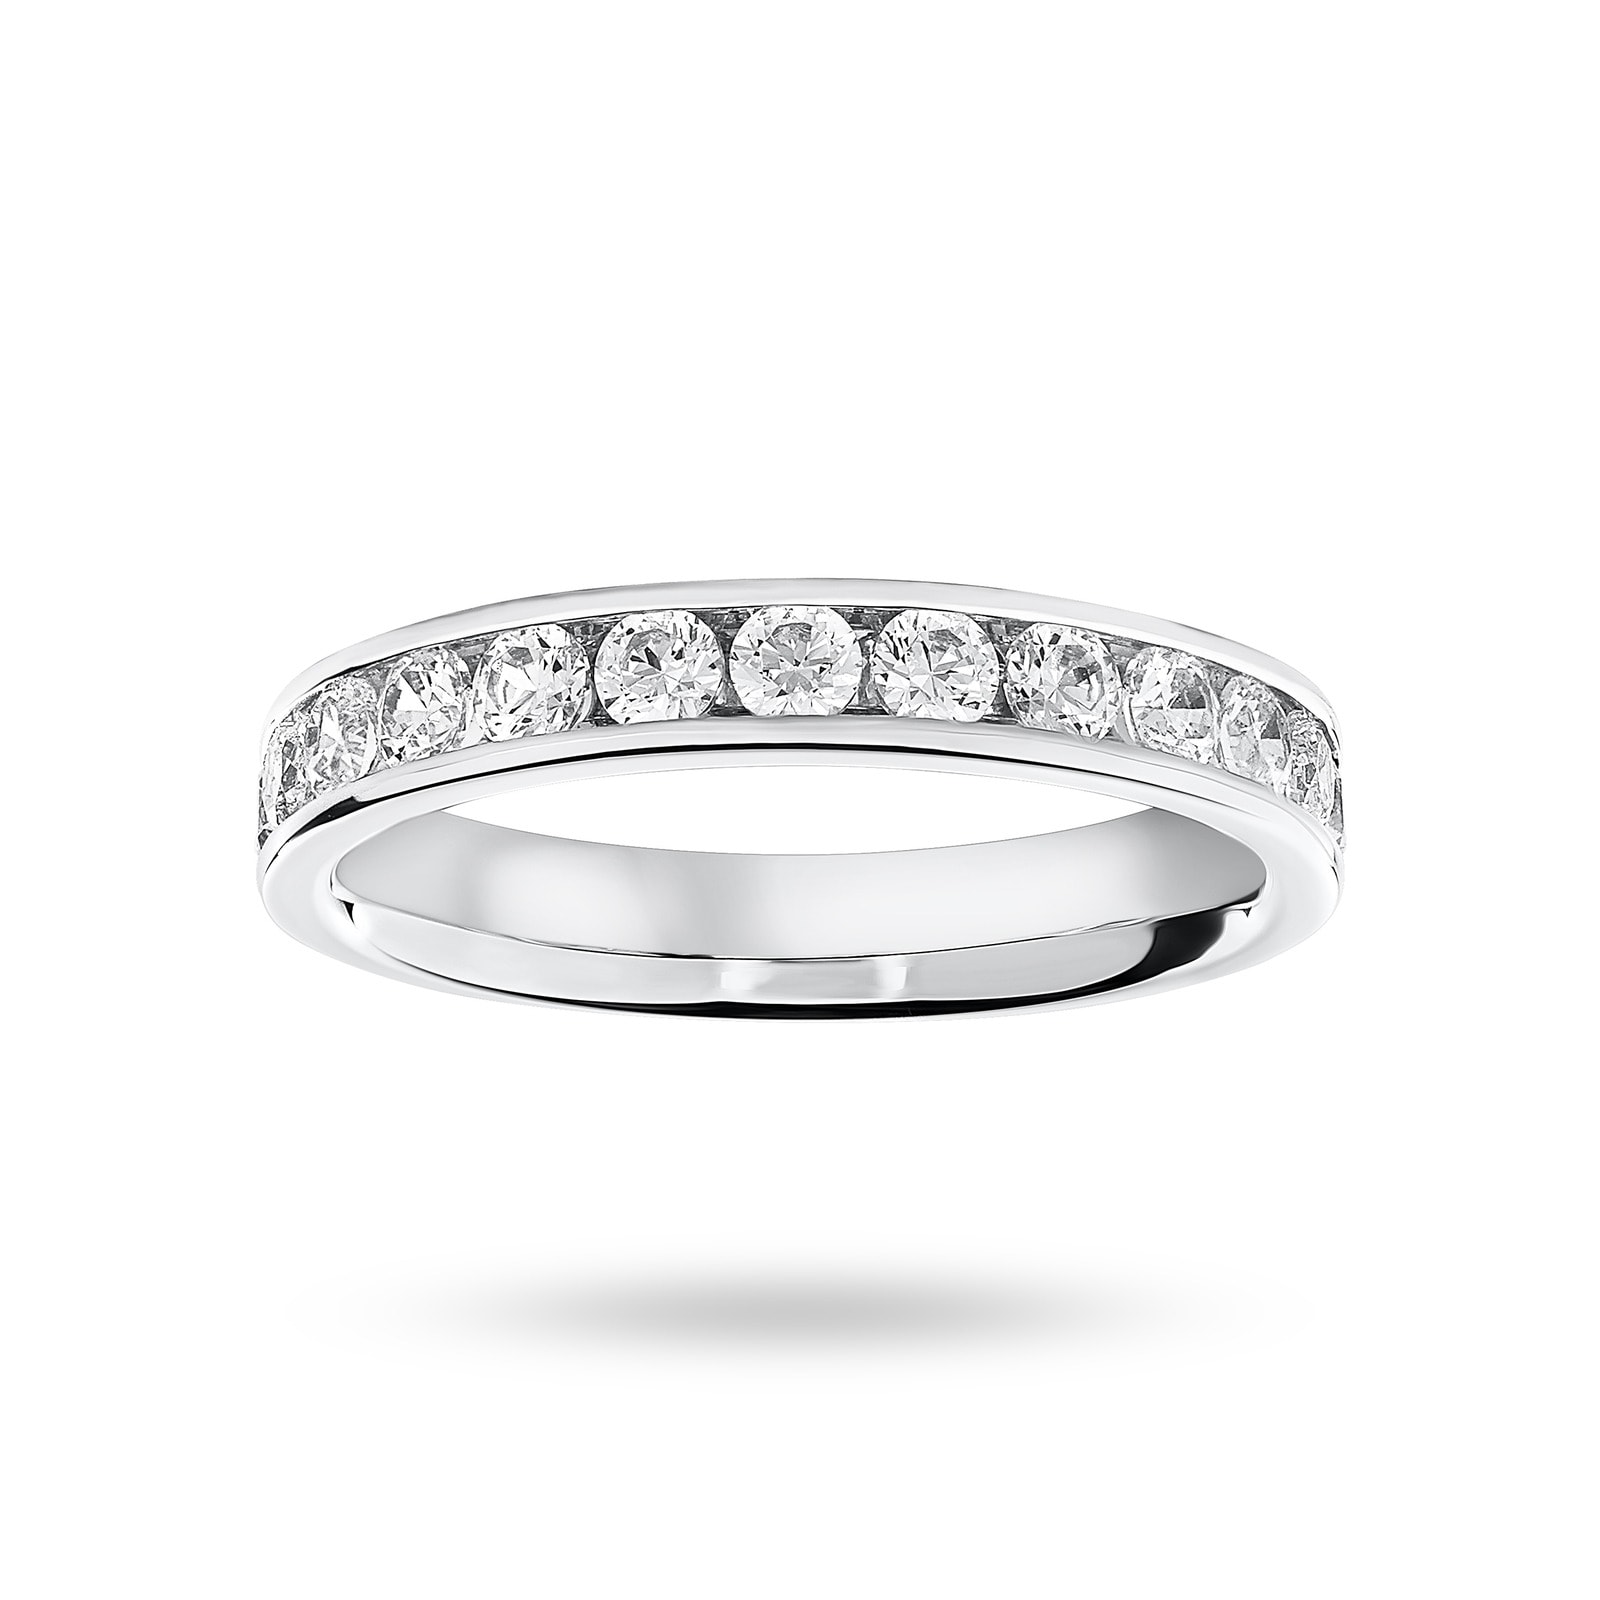 Platinum 0.75 Carat Brilliant Cut Half Eternity Ring - Ring Size N